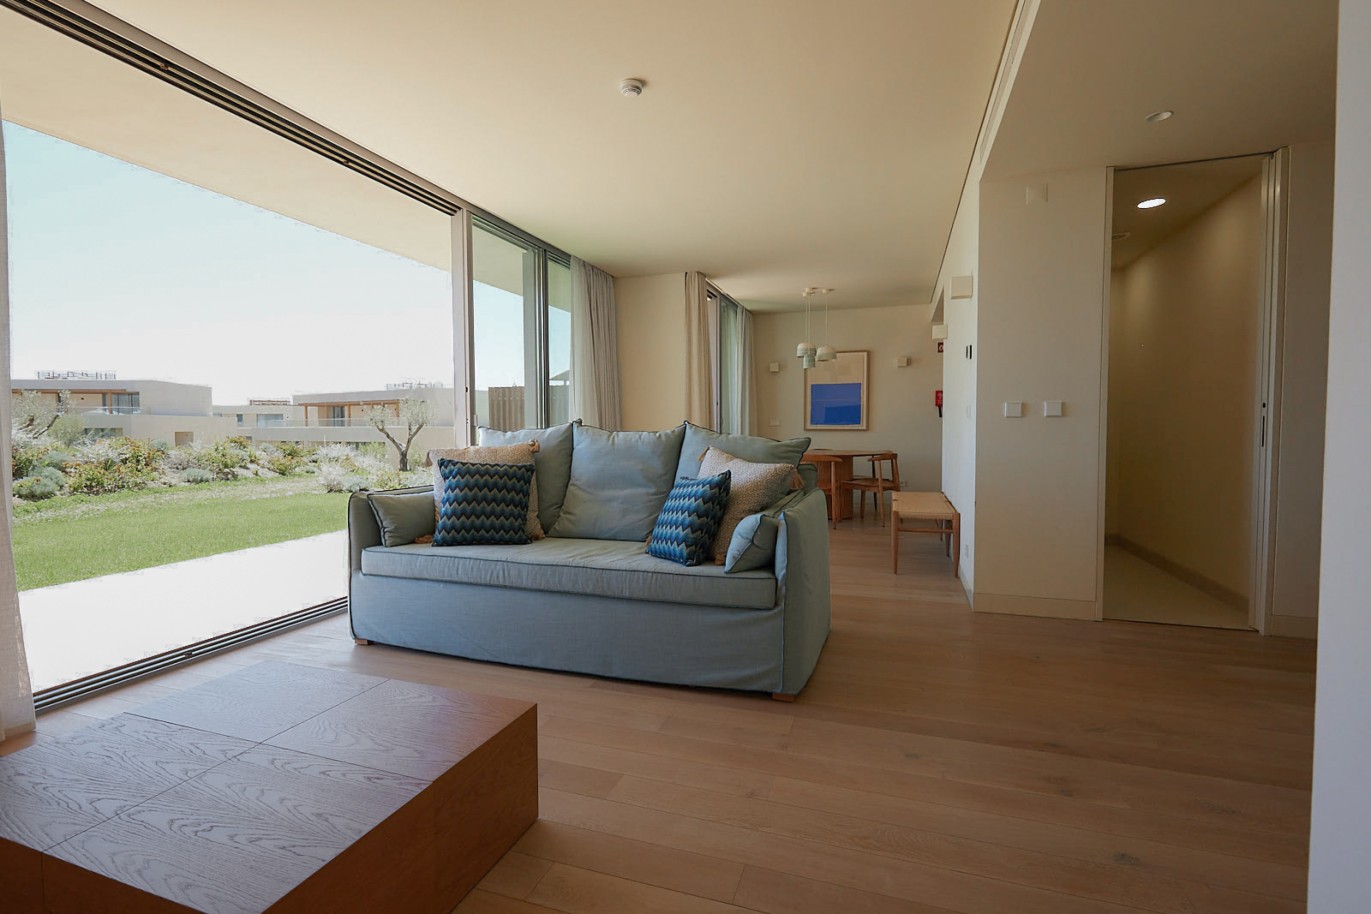 Piso de 2 dormitorios en complejo, en venta en Porches, Algarve_228947